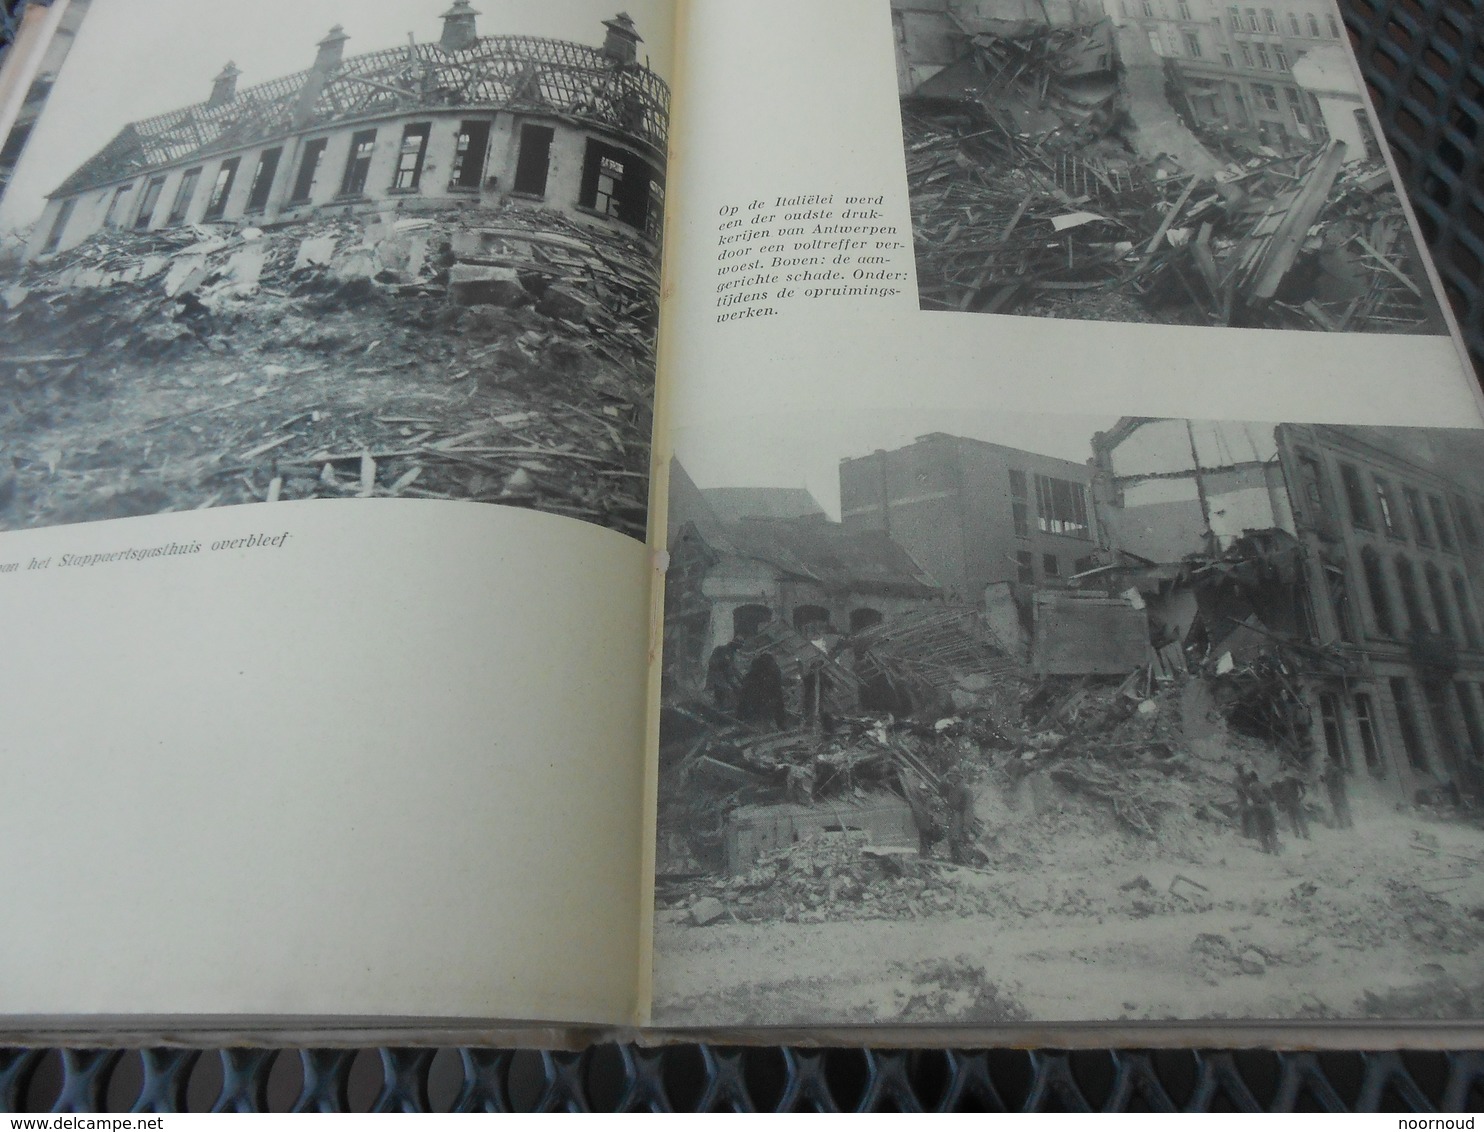 Antwerpen De Slag om Antwerpen Militair WOII Claes  Capt Wood  73 blz   Verslag periode  1944 Veel foto's